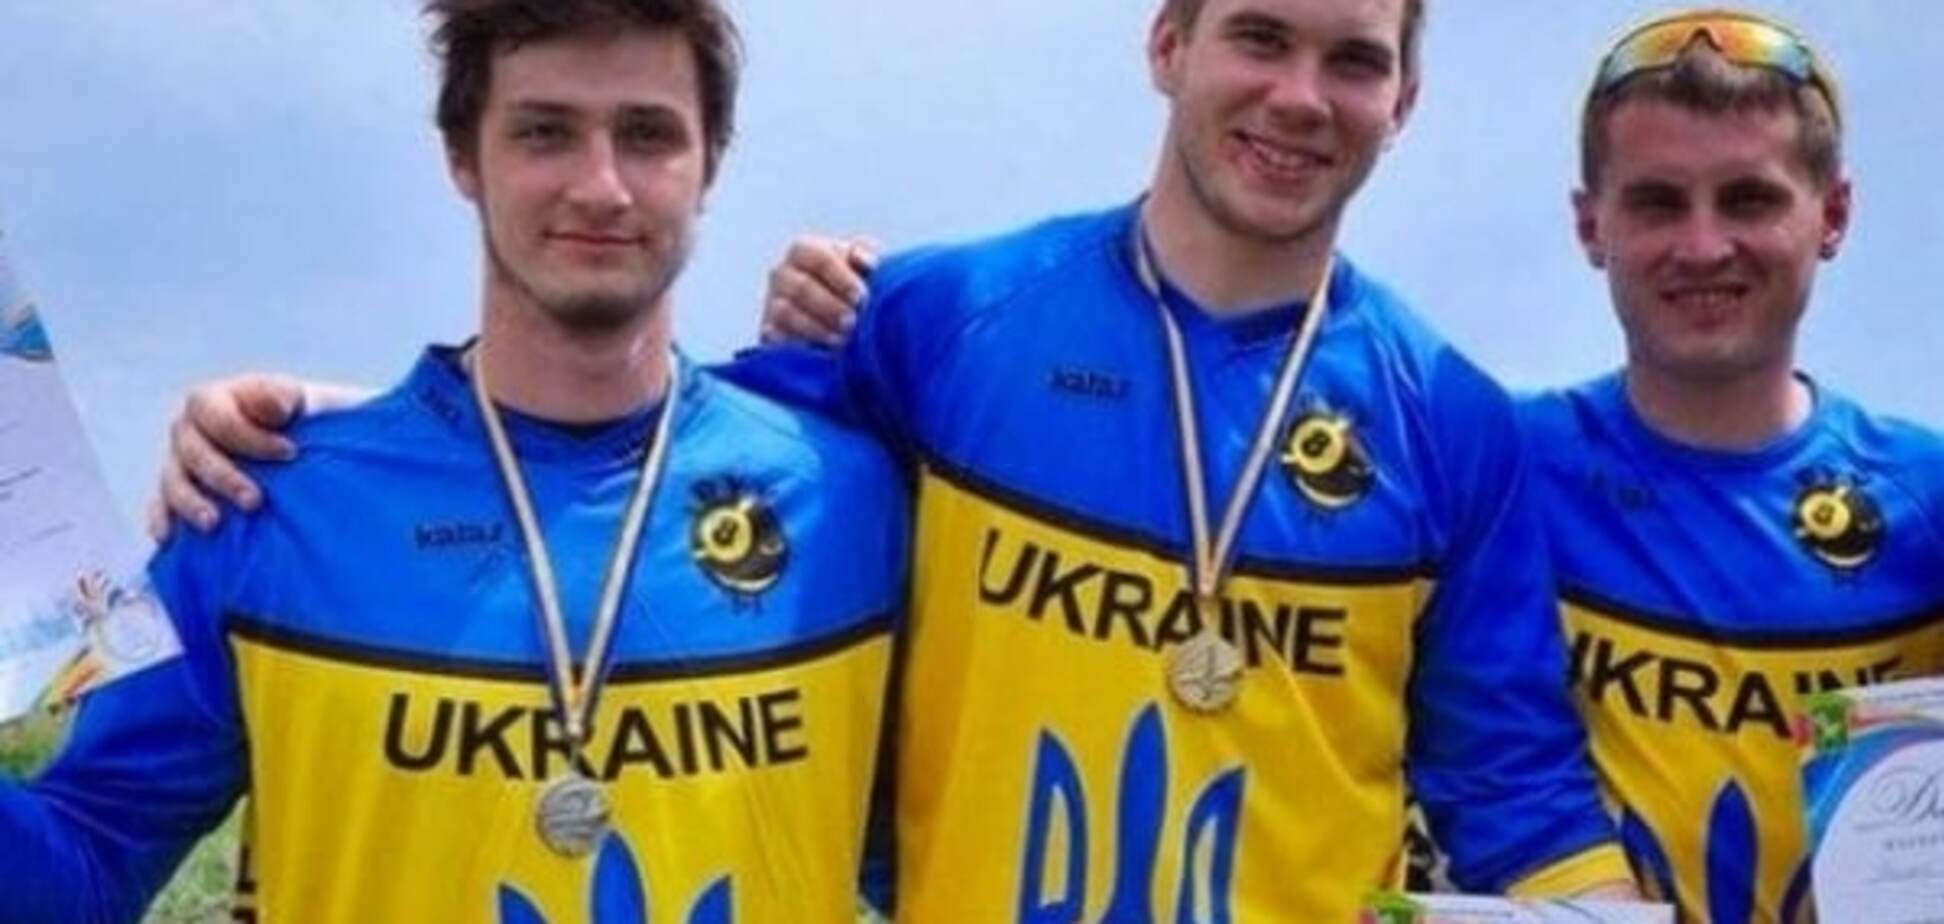 Наплевали на Украину. Европа разрешила велосипедистам провести гонку в Крыму